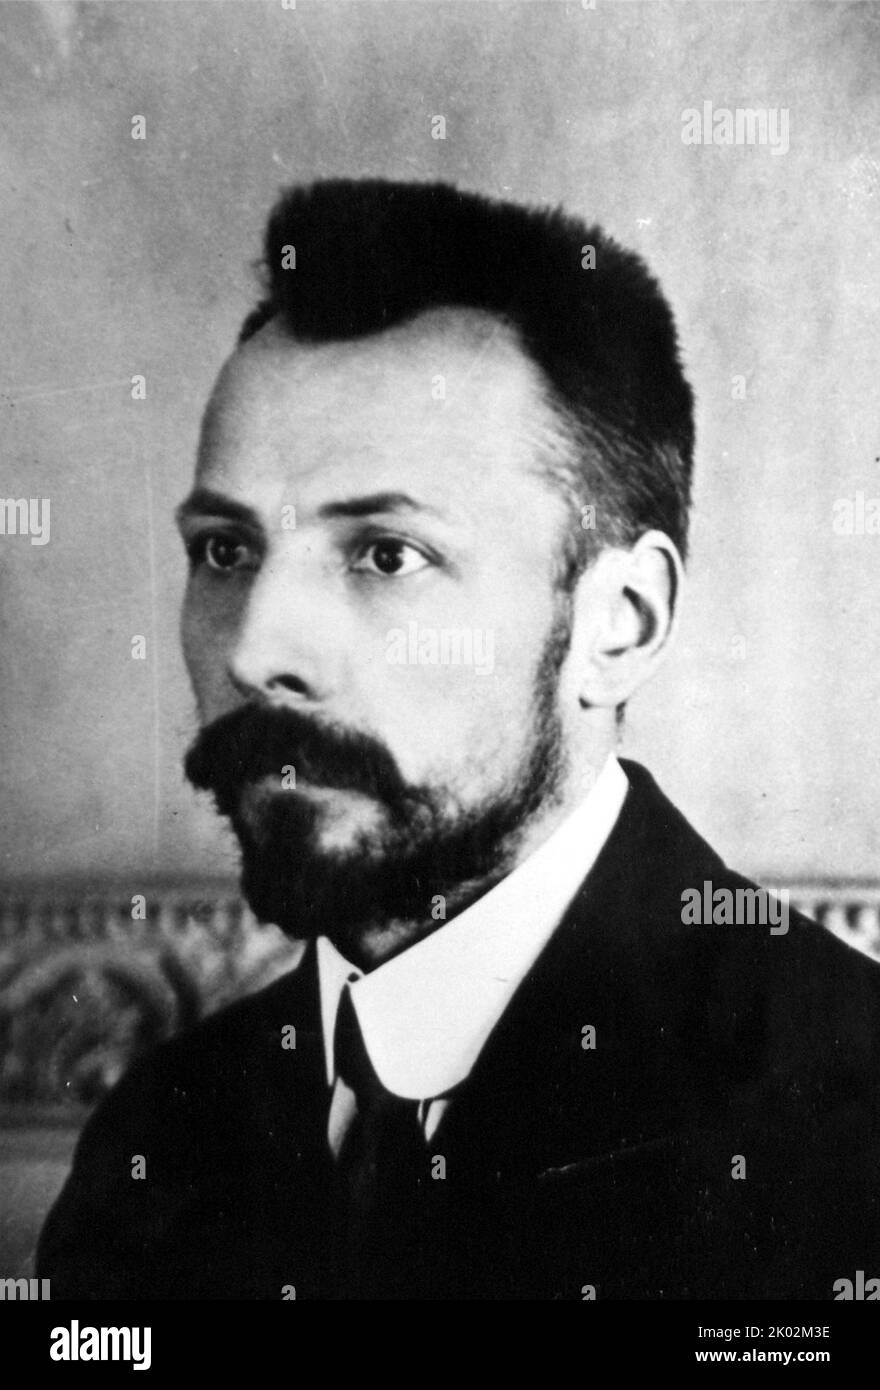 Vincas Mickevicius (Mickiewicz), bekannt unter seinem Pseudonym Kapsukas (1880 - 1935), litauischer kommunistischer politischer Aktivist, Publizist und Revolutionär. Als aktives Mitglied der Litauischen Nationalen Wiedergeburt schrieb und verfasste er zahlreiche litauische Publikationen und trat der Litauischen Sozialdemokratischen Partei bei. Als sich seine Ansichten vom Sozialismus zum Kommunismus wandten, wurde er einer der Gründer und Führer der litauischen Kommunistischen Partei und leitete die kurzlebige litauische Sozialistische Sowjetrepublik Stockfoto